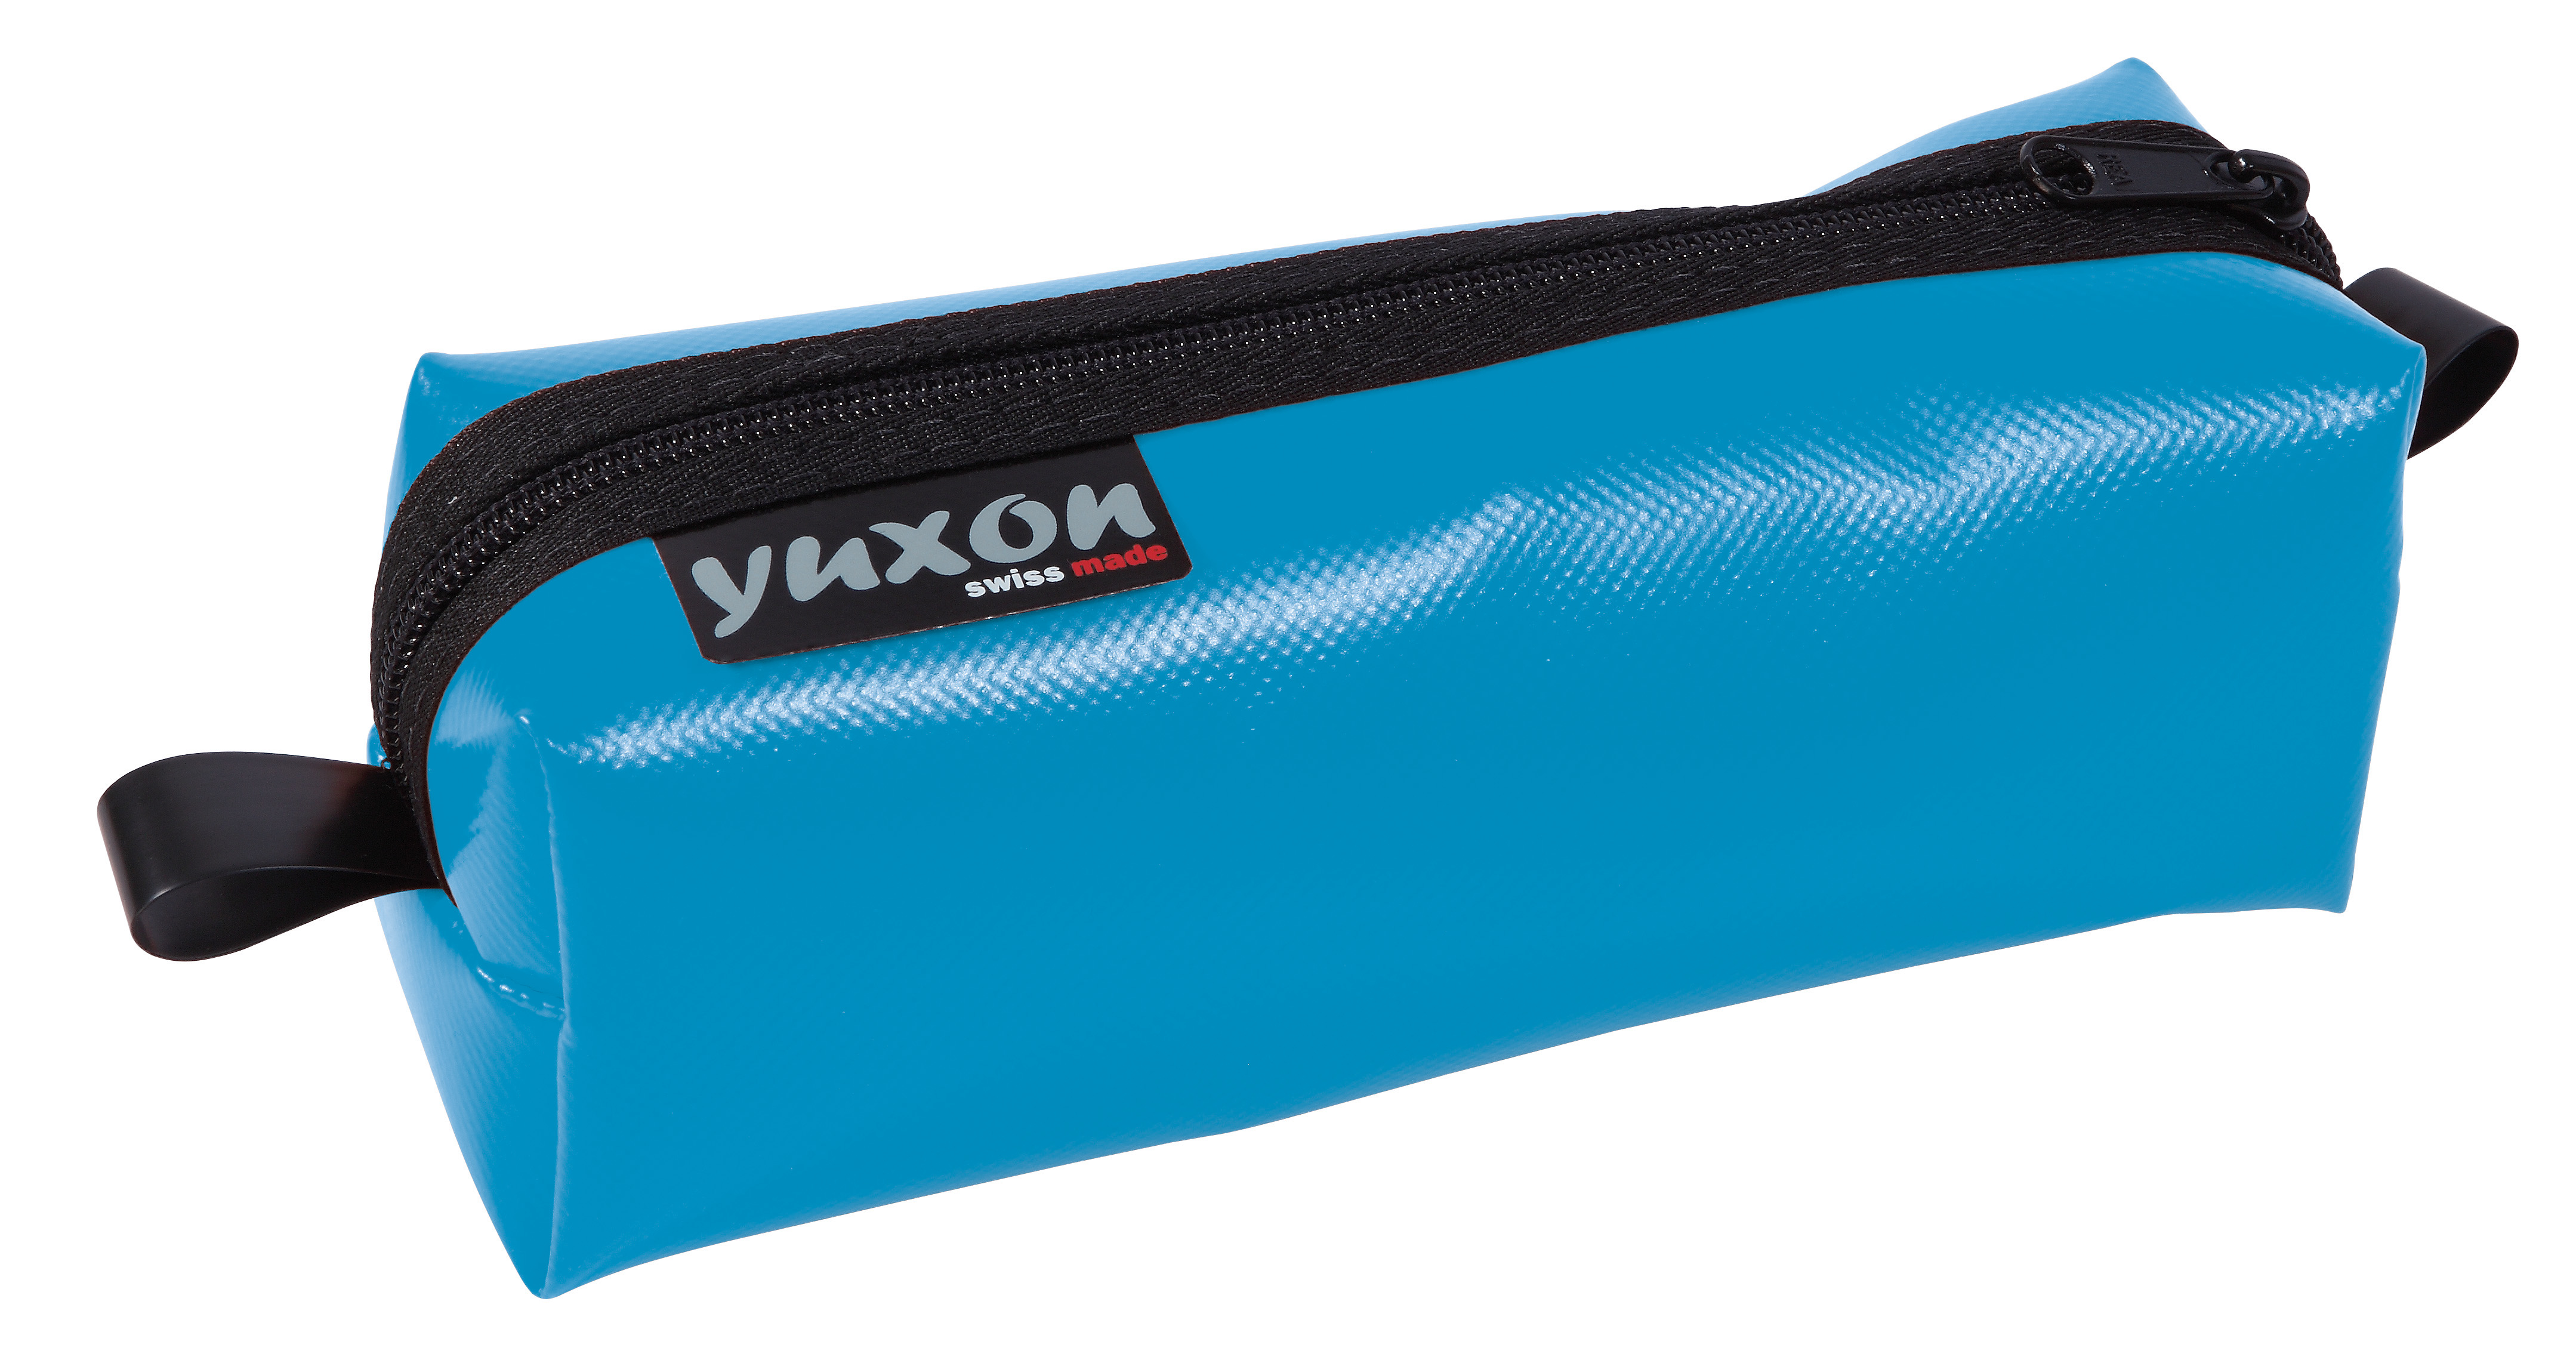 YUXON Trousse Maxi 8900.02 bleu clair 200x75x65mm bleu clair 200x75x65mm